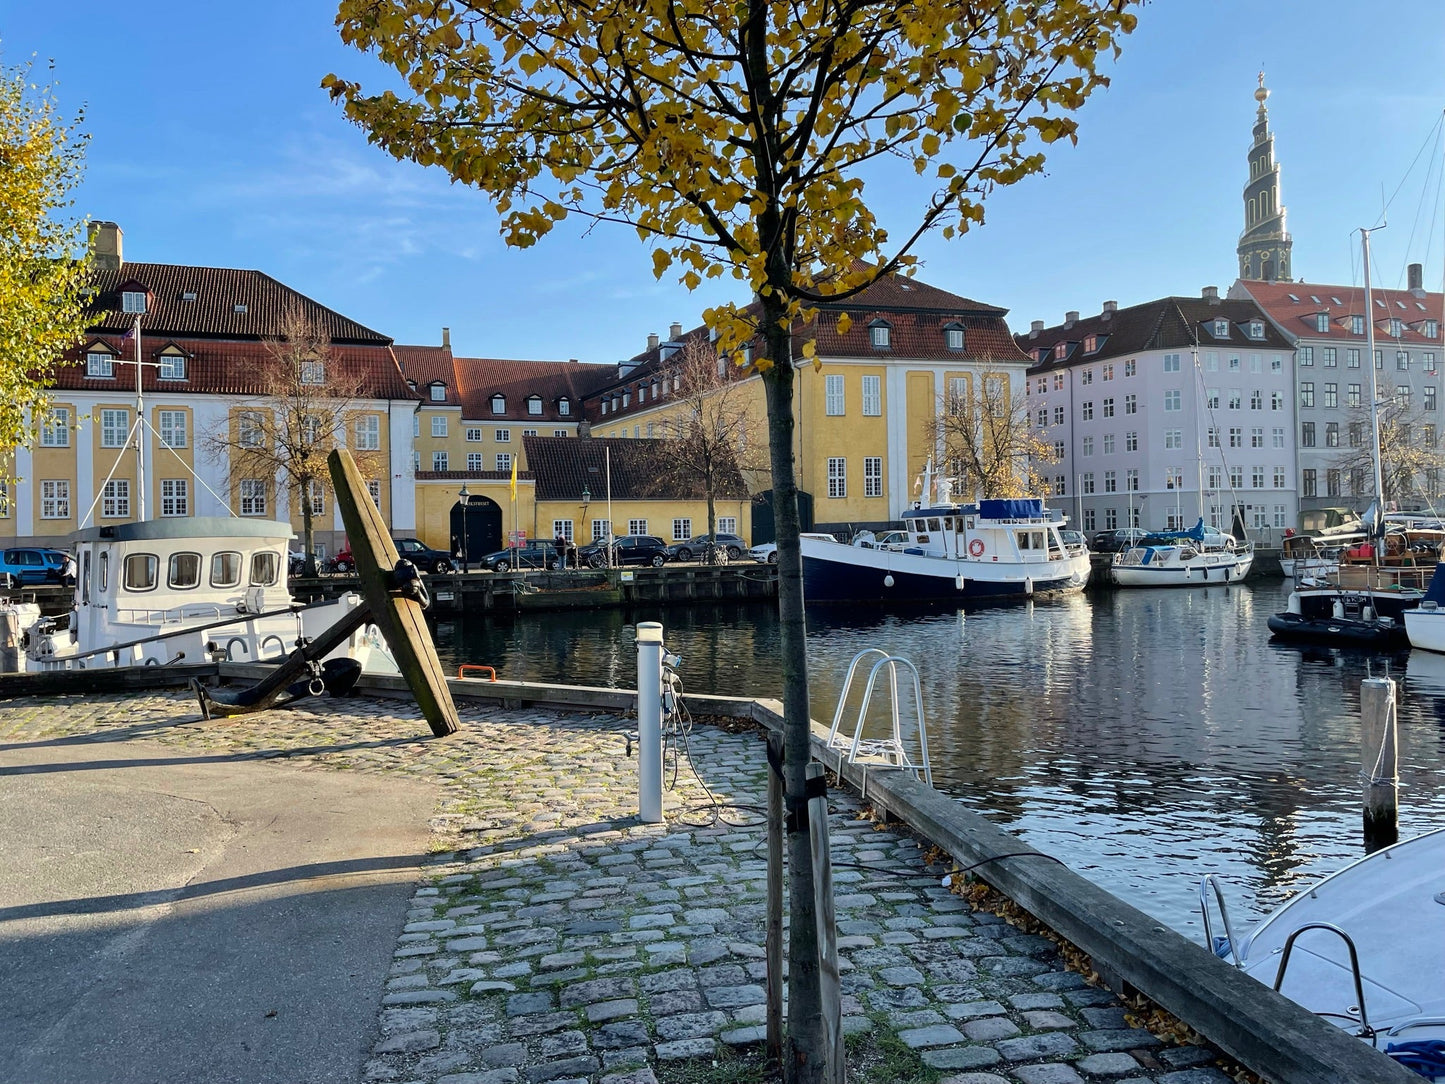 Skattejagt i Christianhavn - Byg et rumskib på denne redningsmission